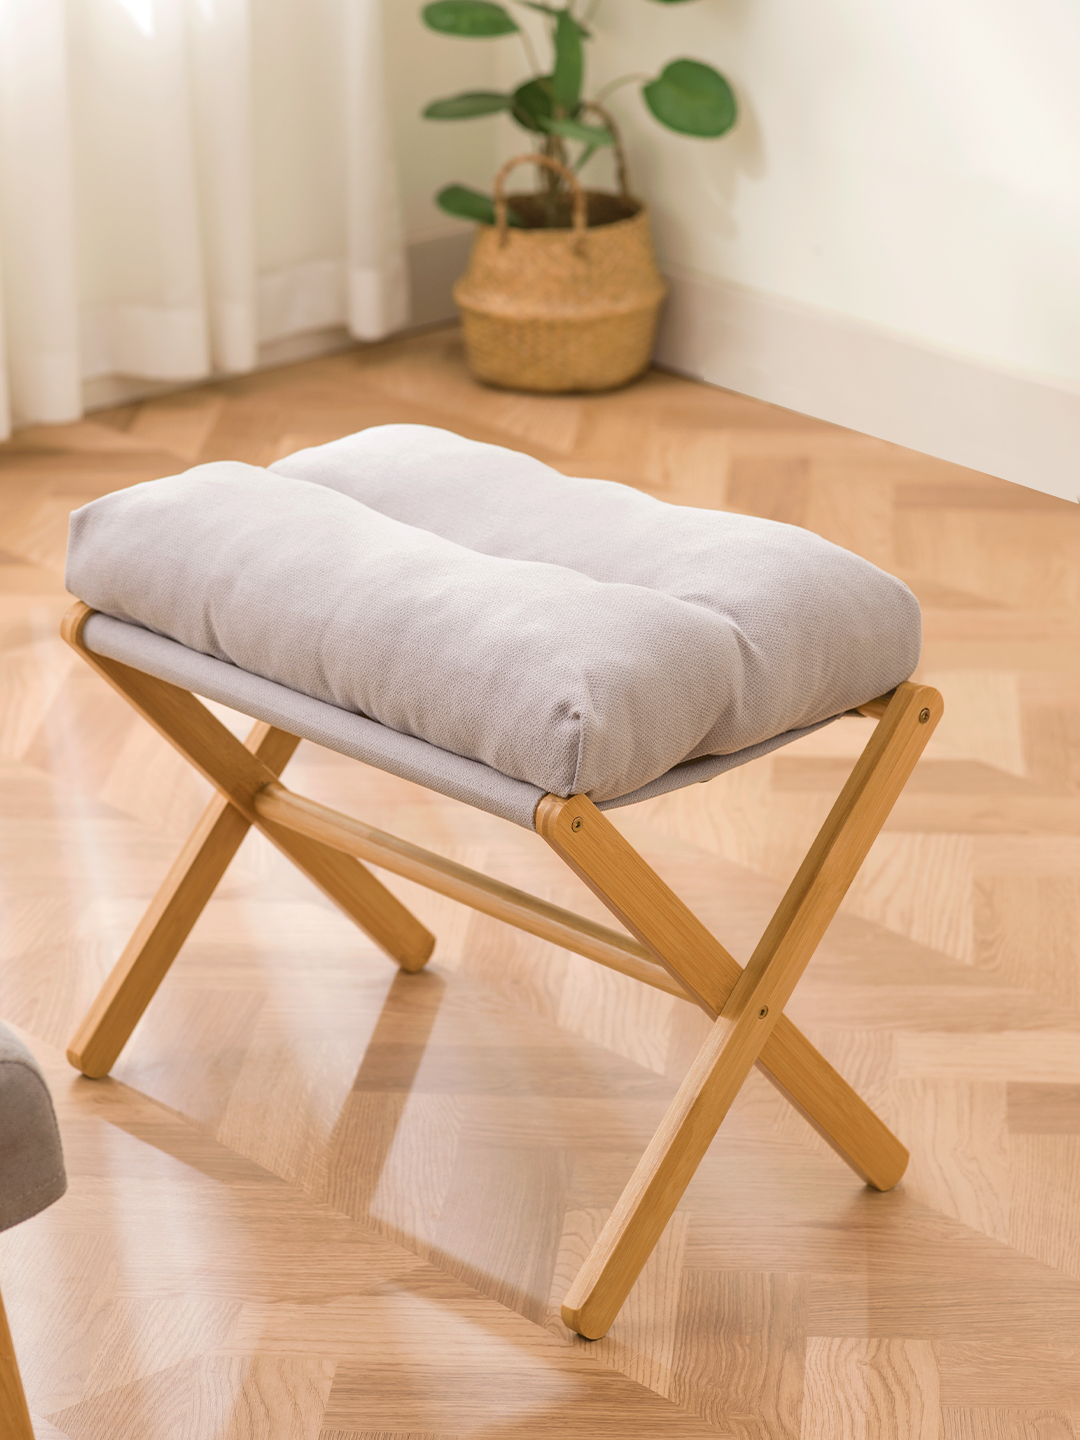 可摺疊加厚布藝矮凳 家用簡約實用腳踏凳 椅子板凳 沙發矮凳 224kg 灰色米色 可拆洗軟包